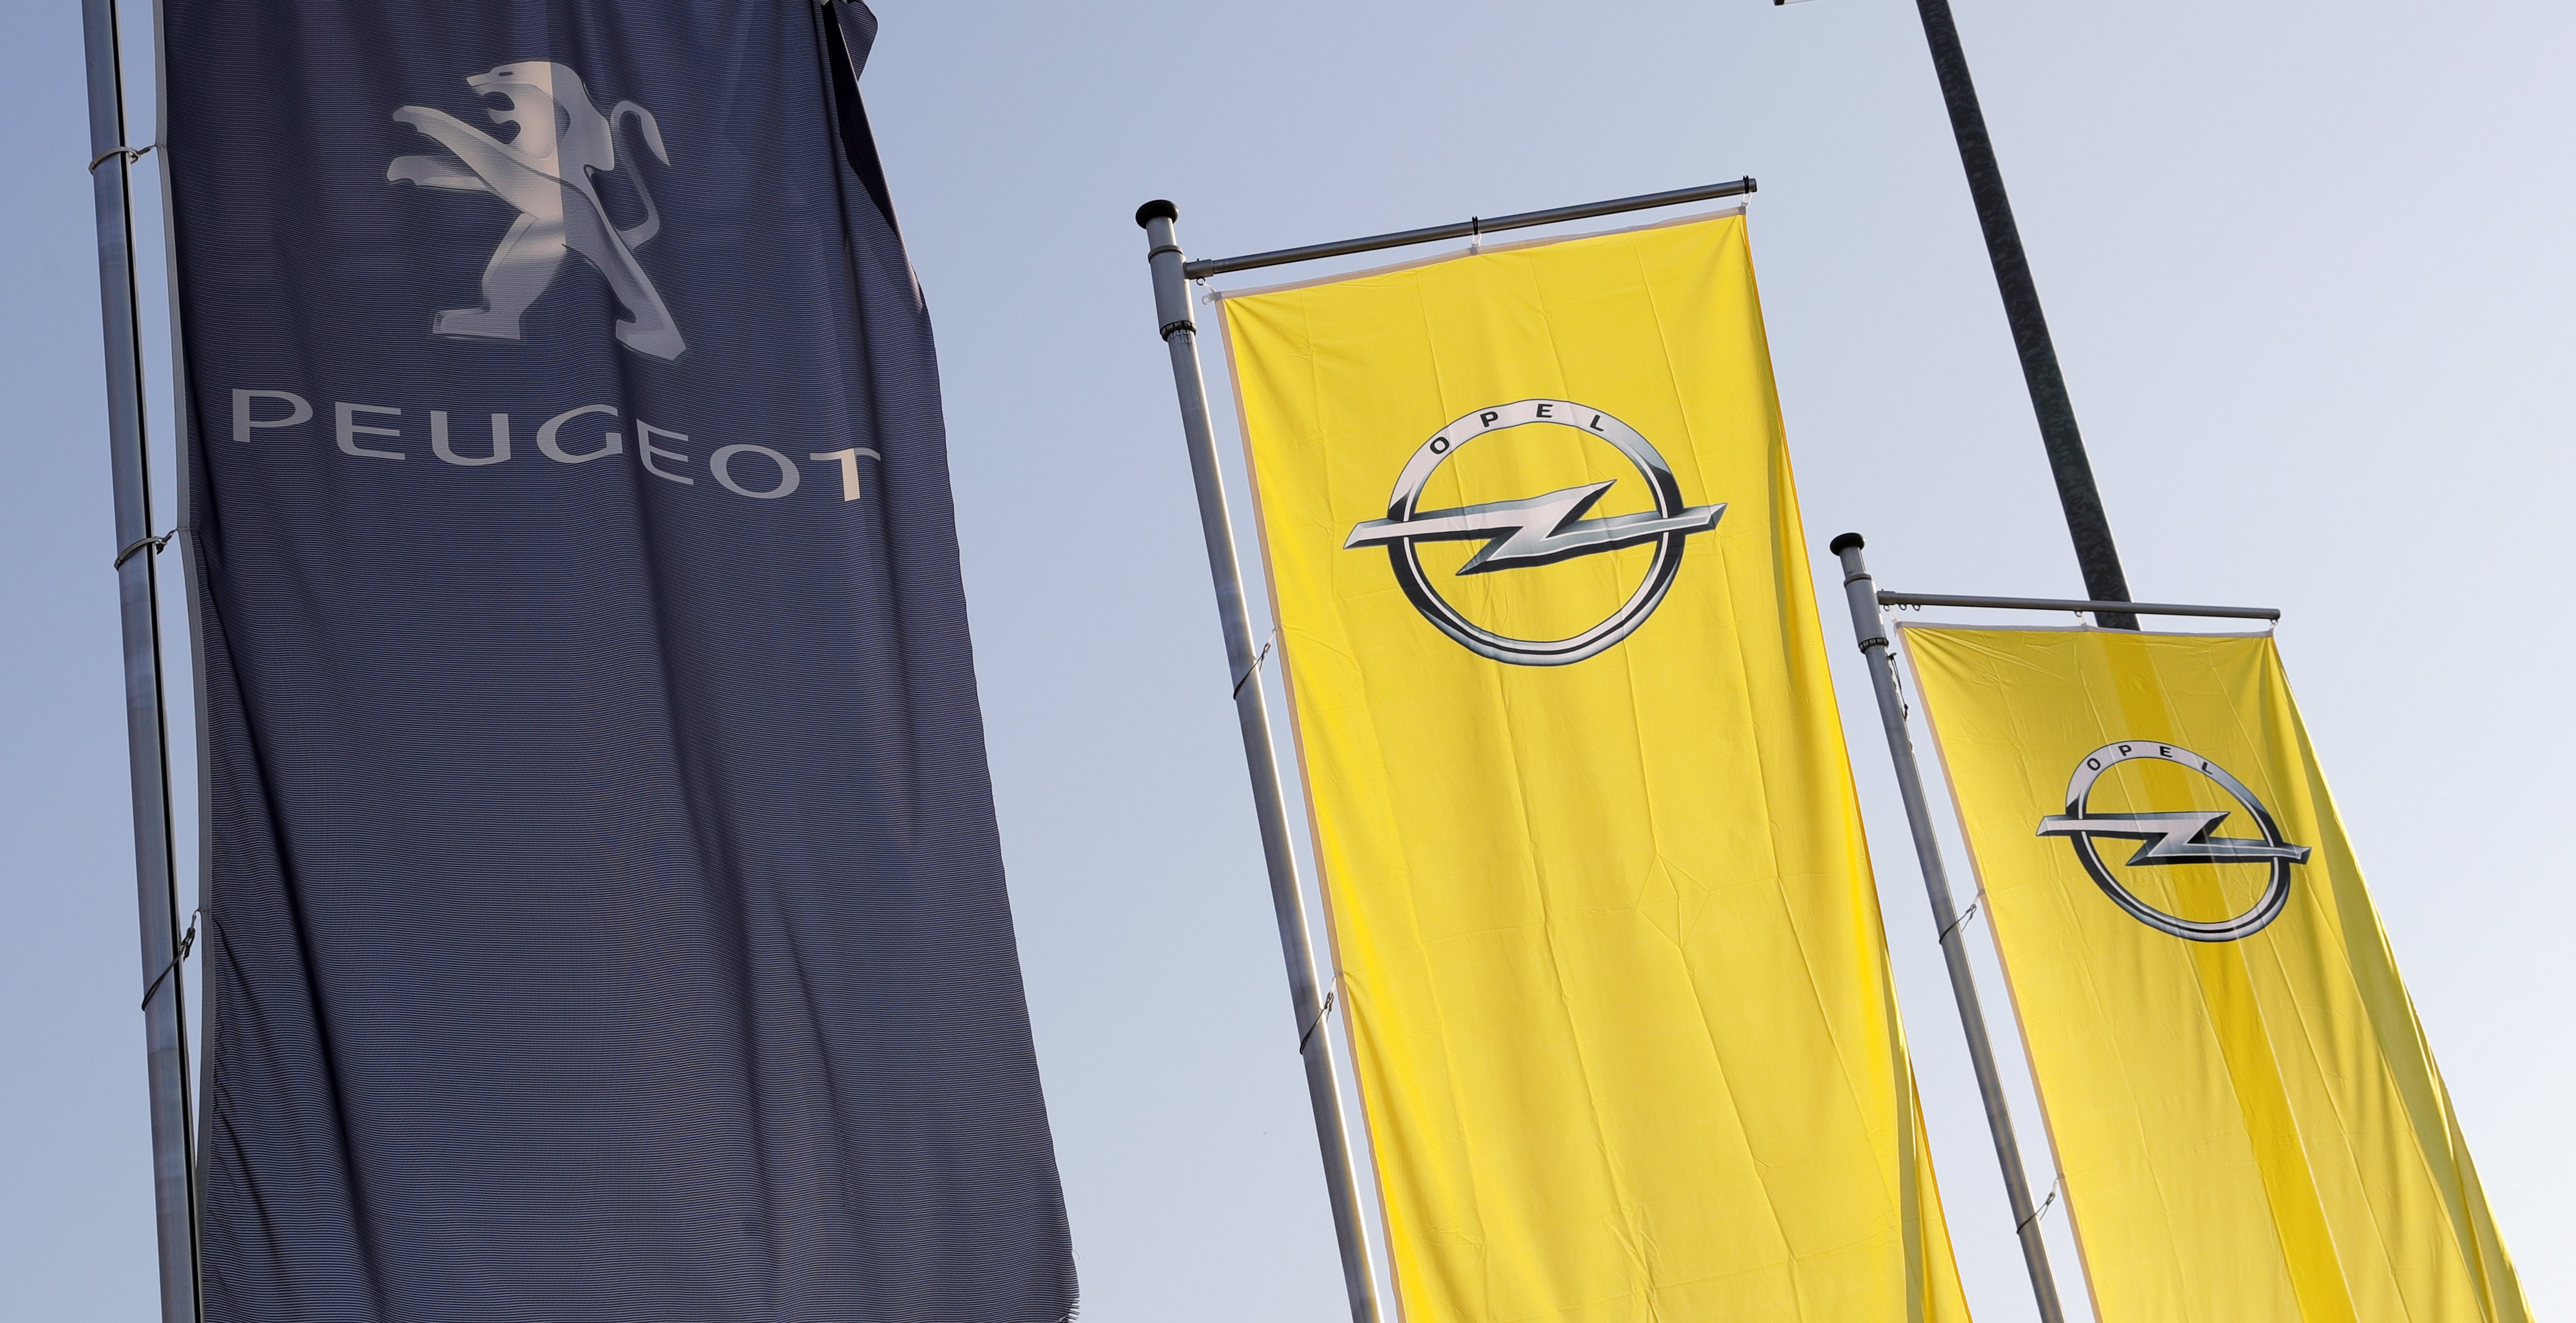 Mε την υπογραφή της Peugeot-Citroen όλα τα νέα μοντέλα της Opel